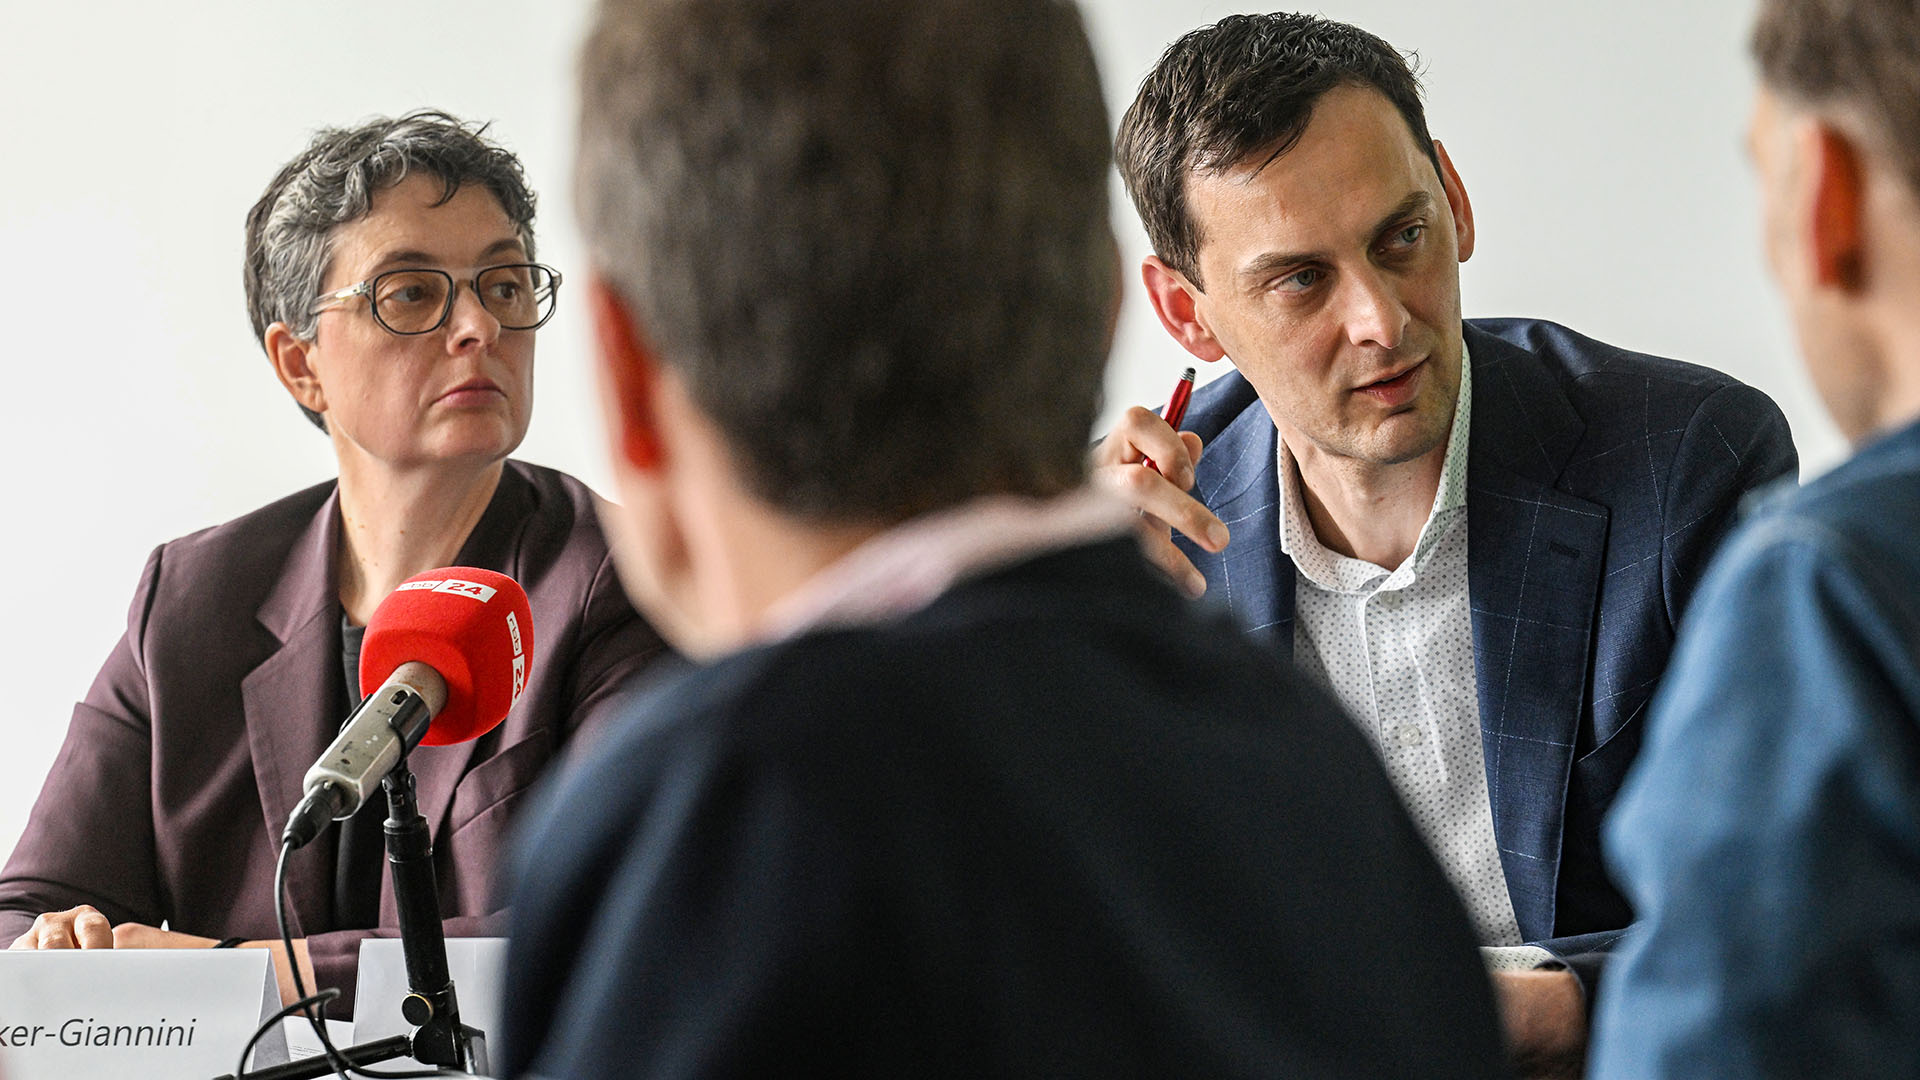 Nicola Boecker-Giannini und Martin Hikel bei einer Pressekonferenz zum Mitgliederentscheid der Berliner SPD über die neue Doppelspitze der Partei. (Quelle: imago-images/Funke Foto Services)